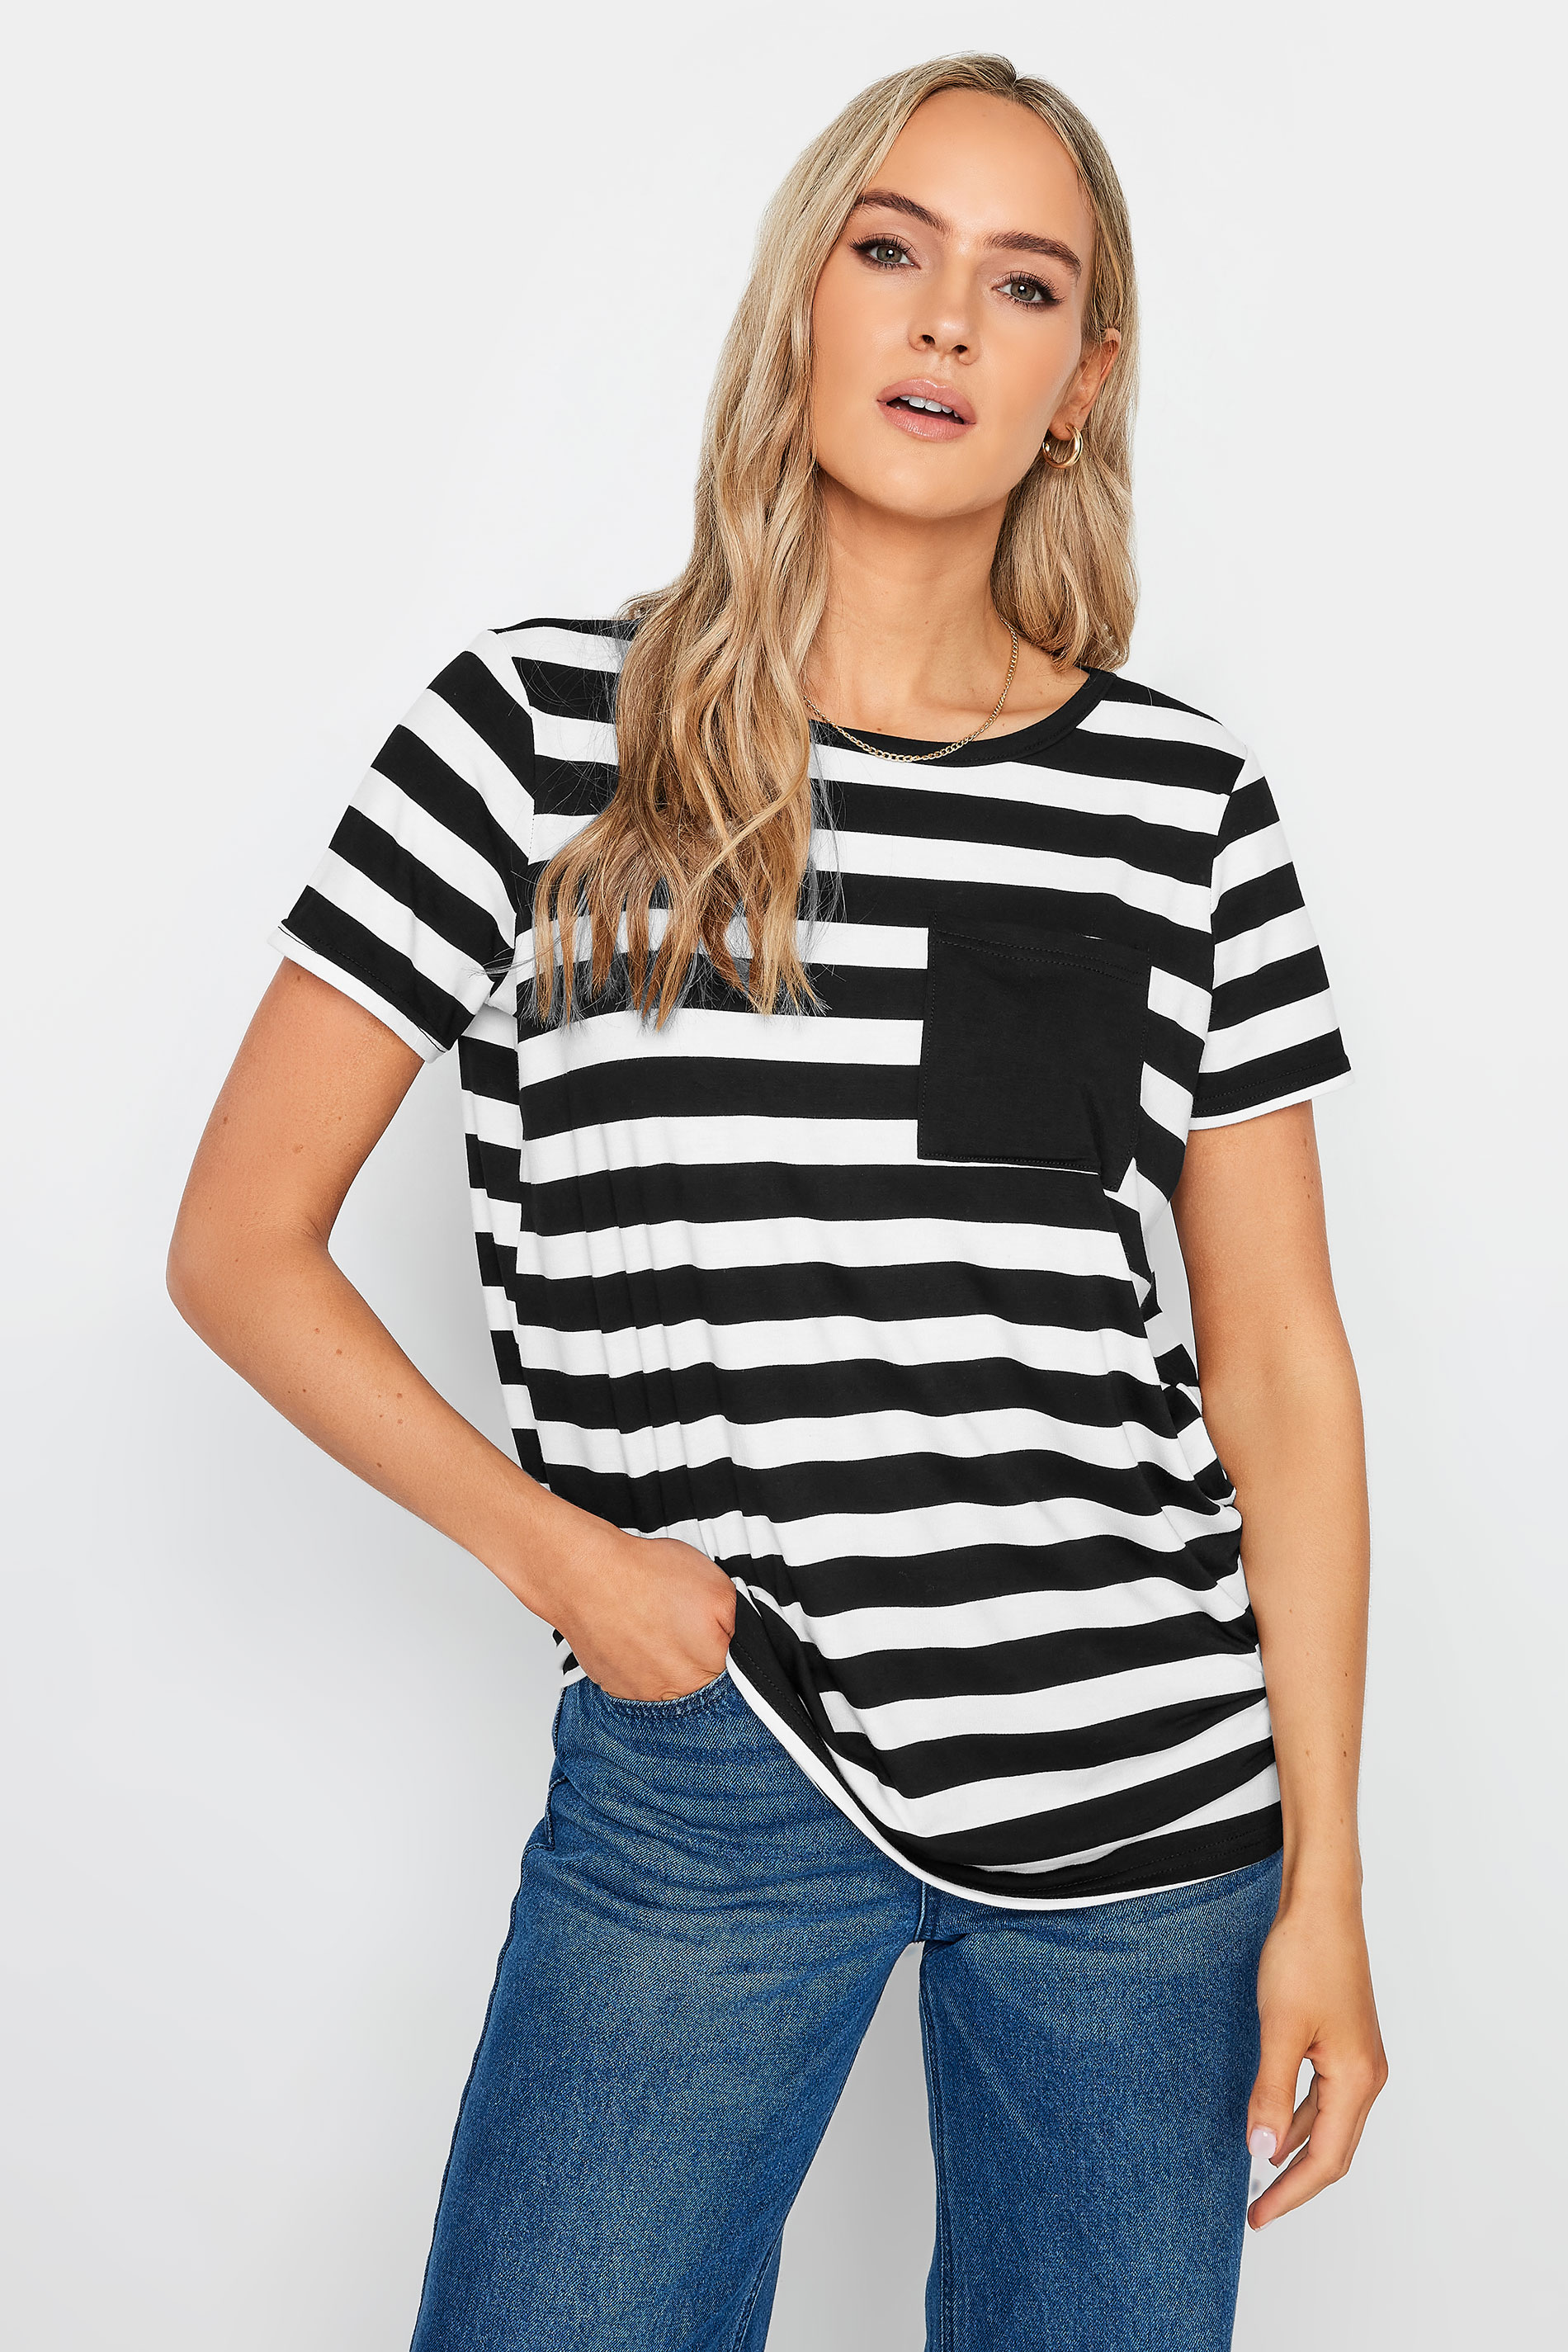 LTS Tall Black & White Stripe T-Shirt | Long Tall Sally  2